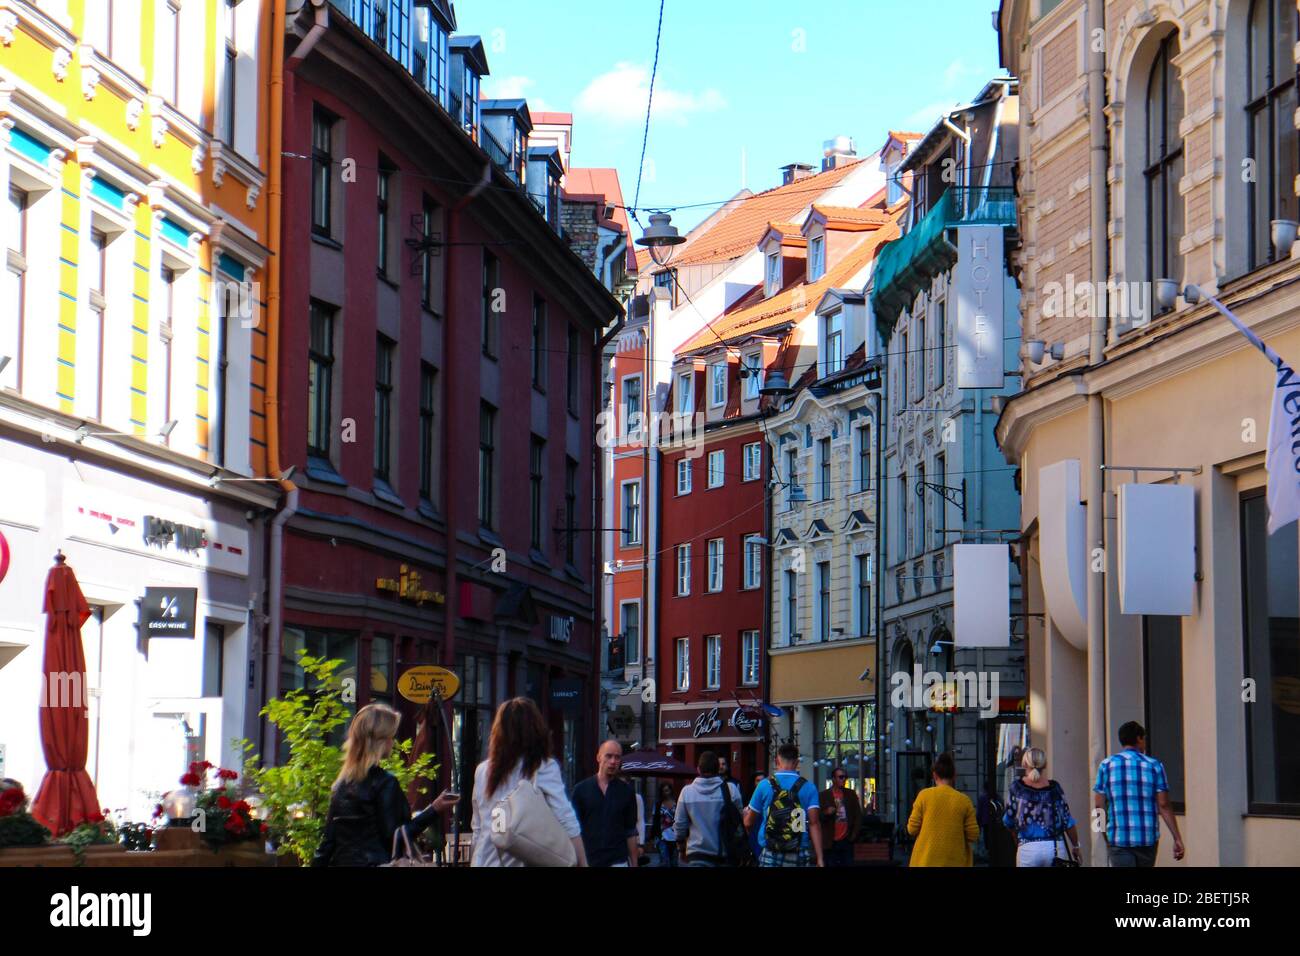 Scène de rue avec des bâtiments colorés dans la vieille ville de Riga, la capitale de la Lettonie. Banque D'Images